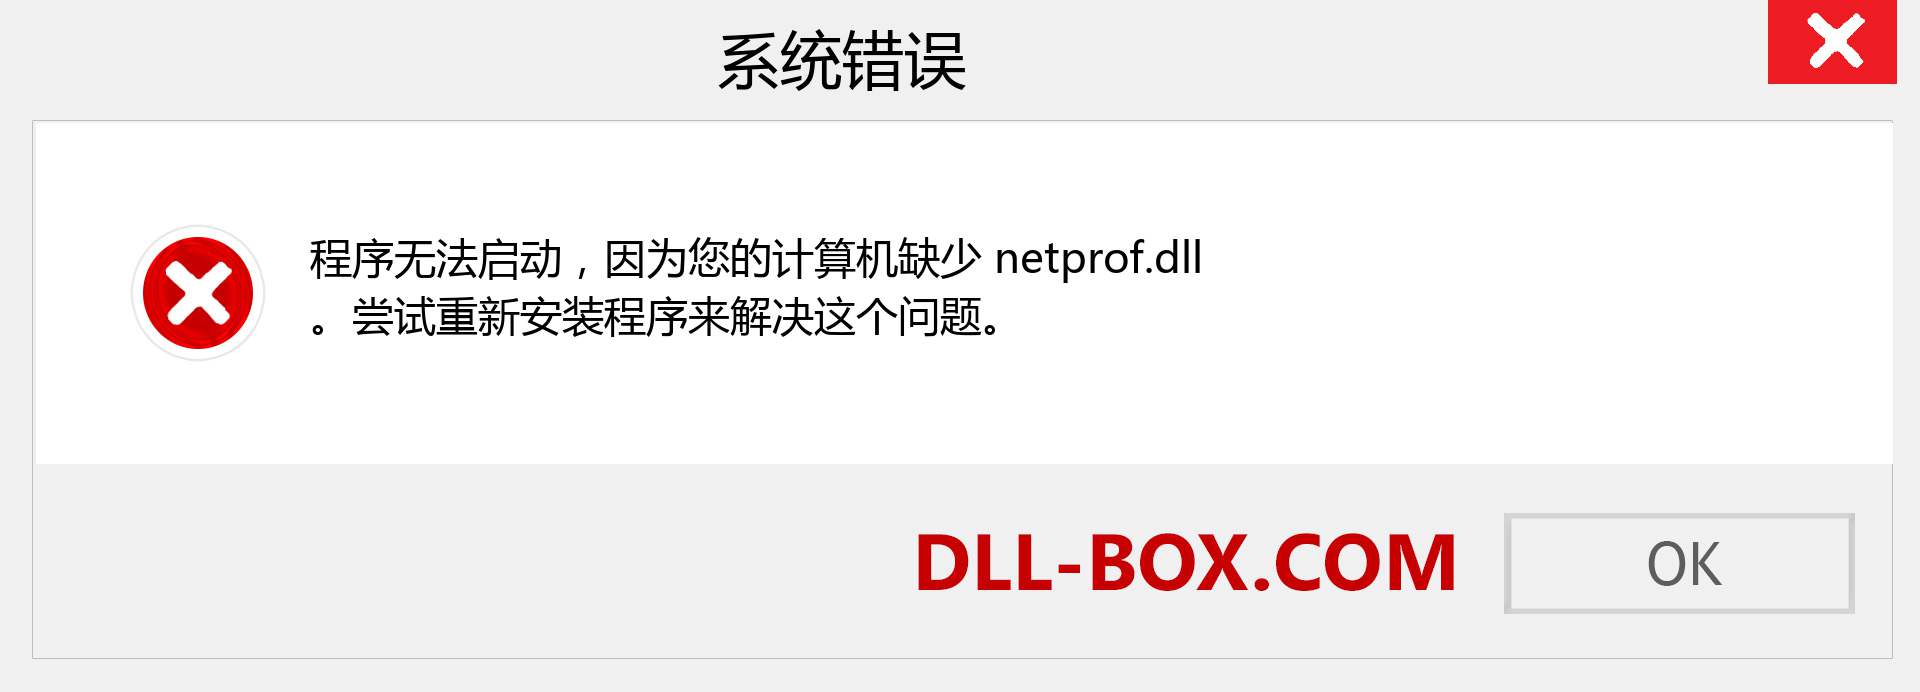 netprof.dll 文件丢失？。 适用于 Windows 7、8、10 的下载 - 修复 Windows、照片、图像上的 netprof dll 丢失错误